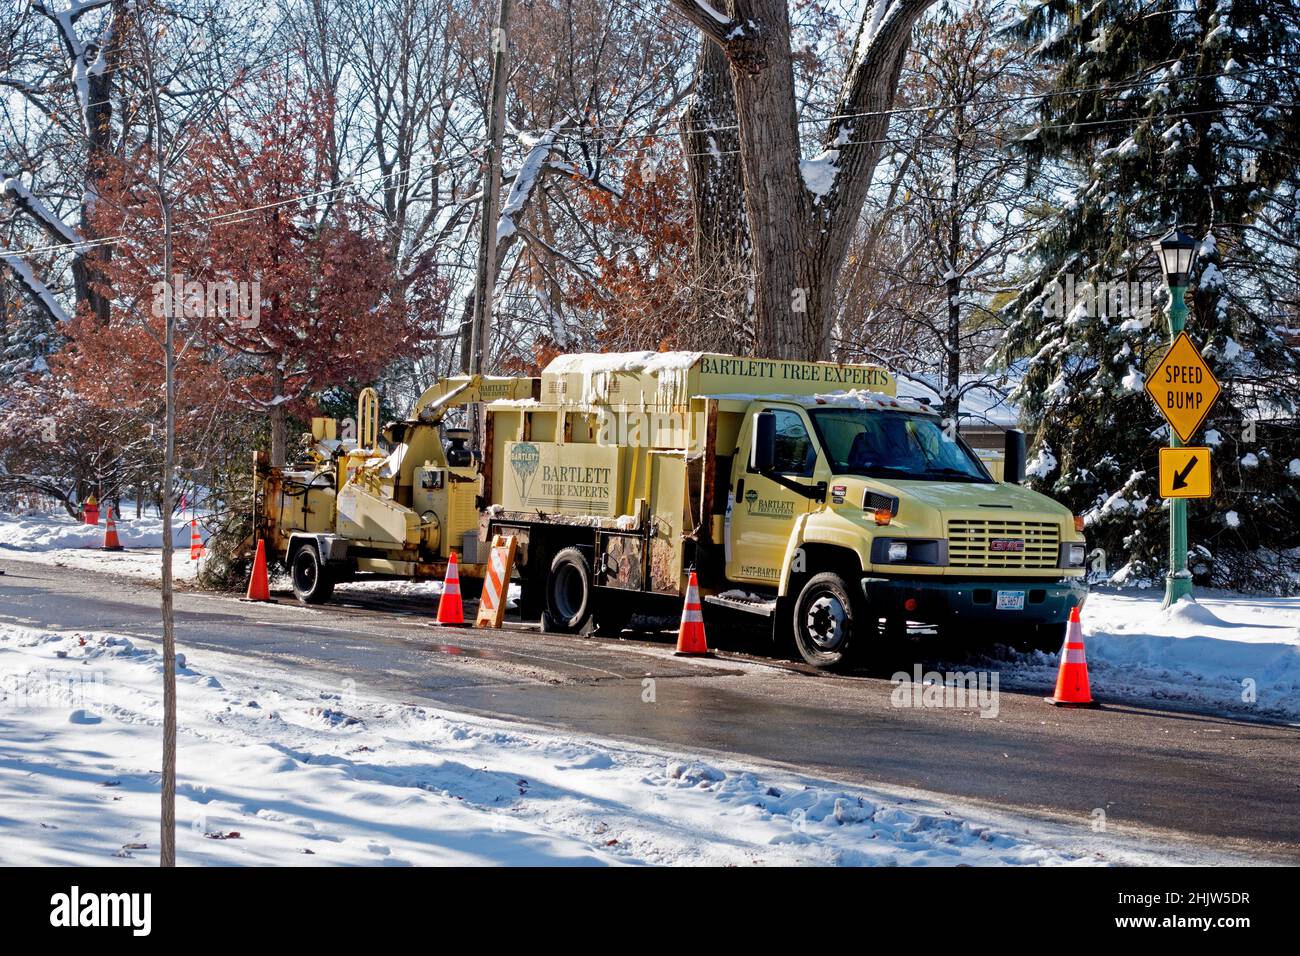 Camion pour râper la taille des arbres d'hiver entouré de cônes d'avertissement orange pour plus de sécurité.St Paul Minnesota MN États-Unis Banque D'Images